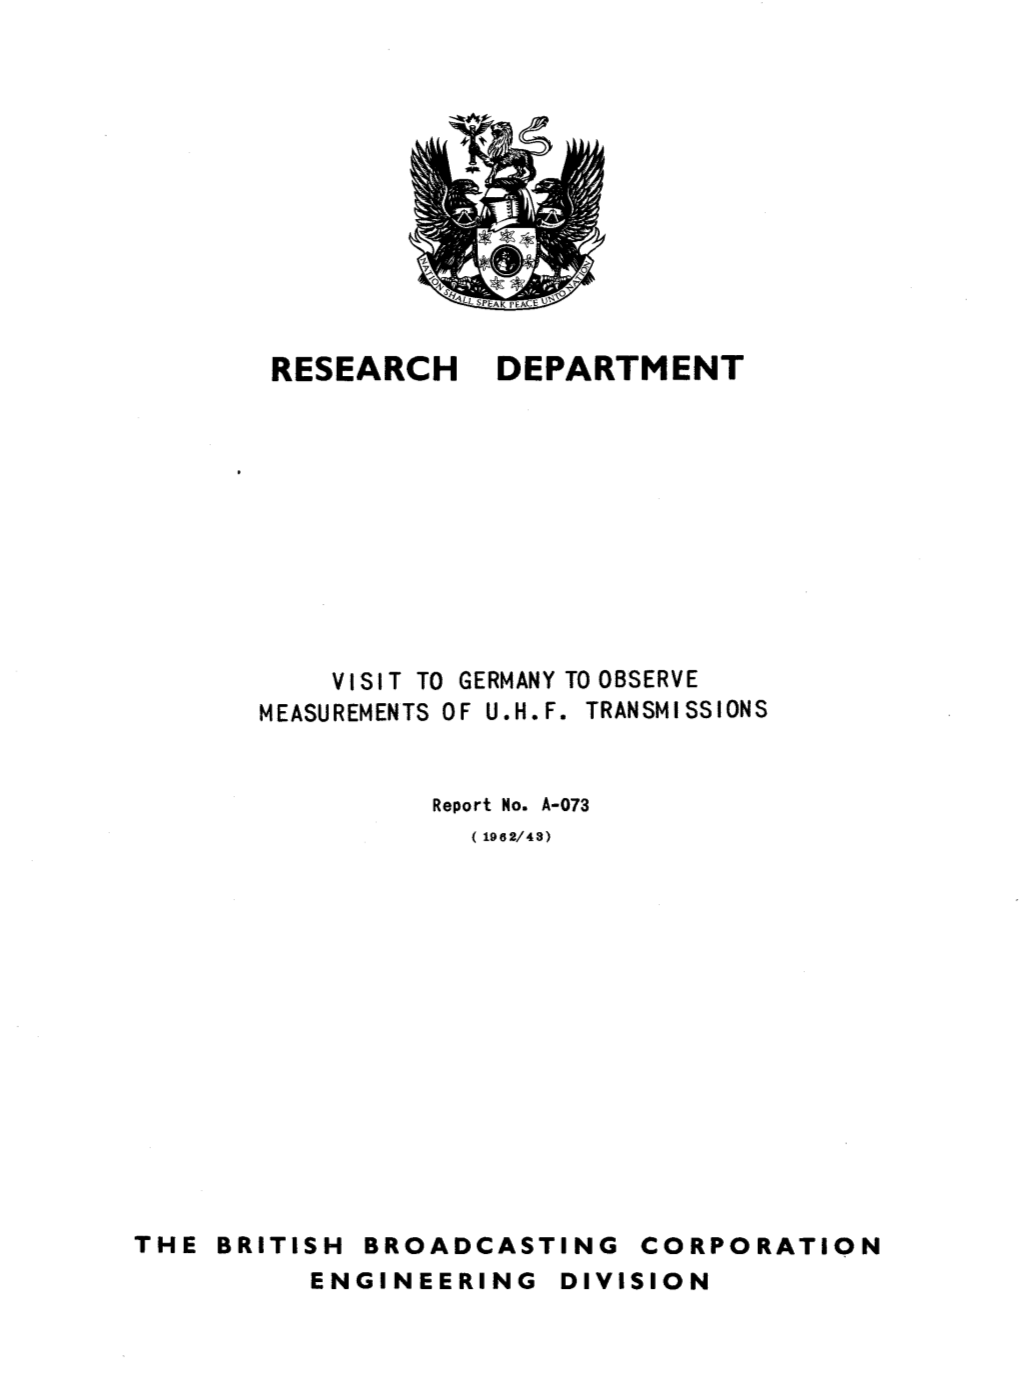 R&D Report 1962-43